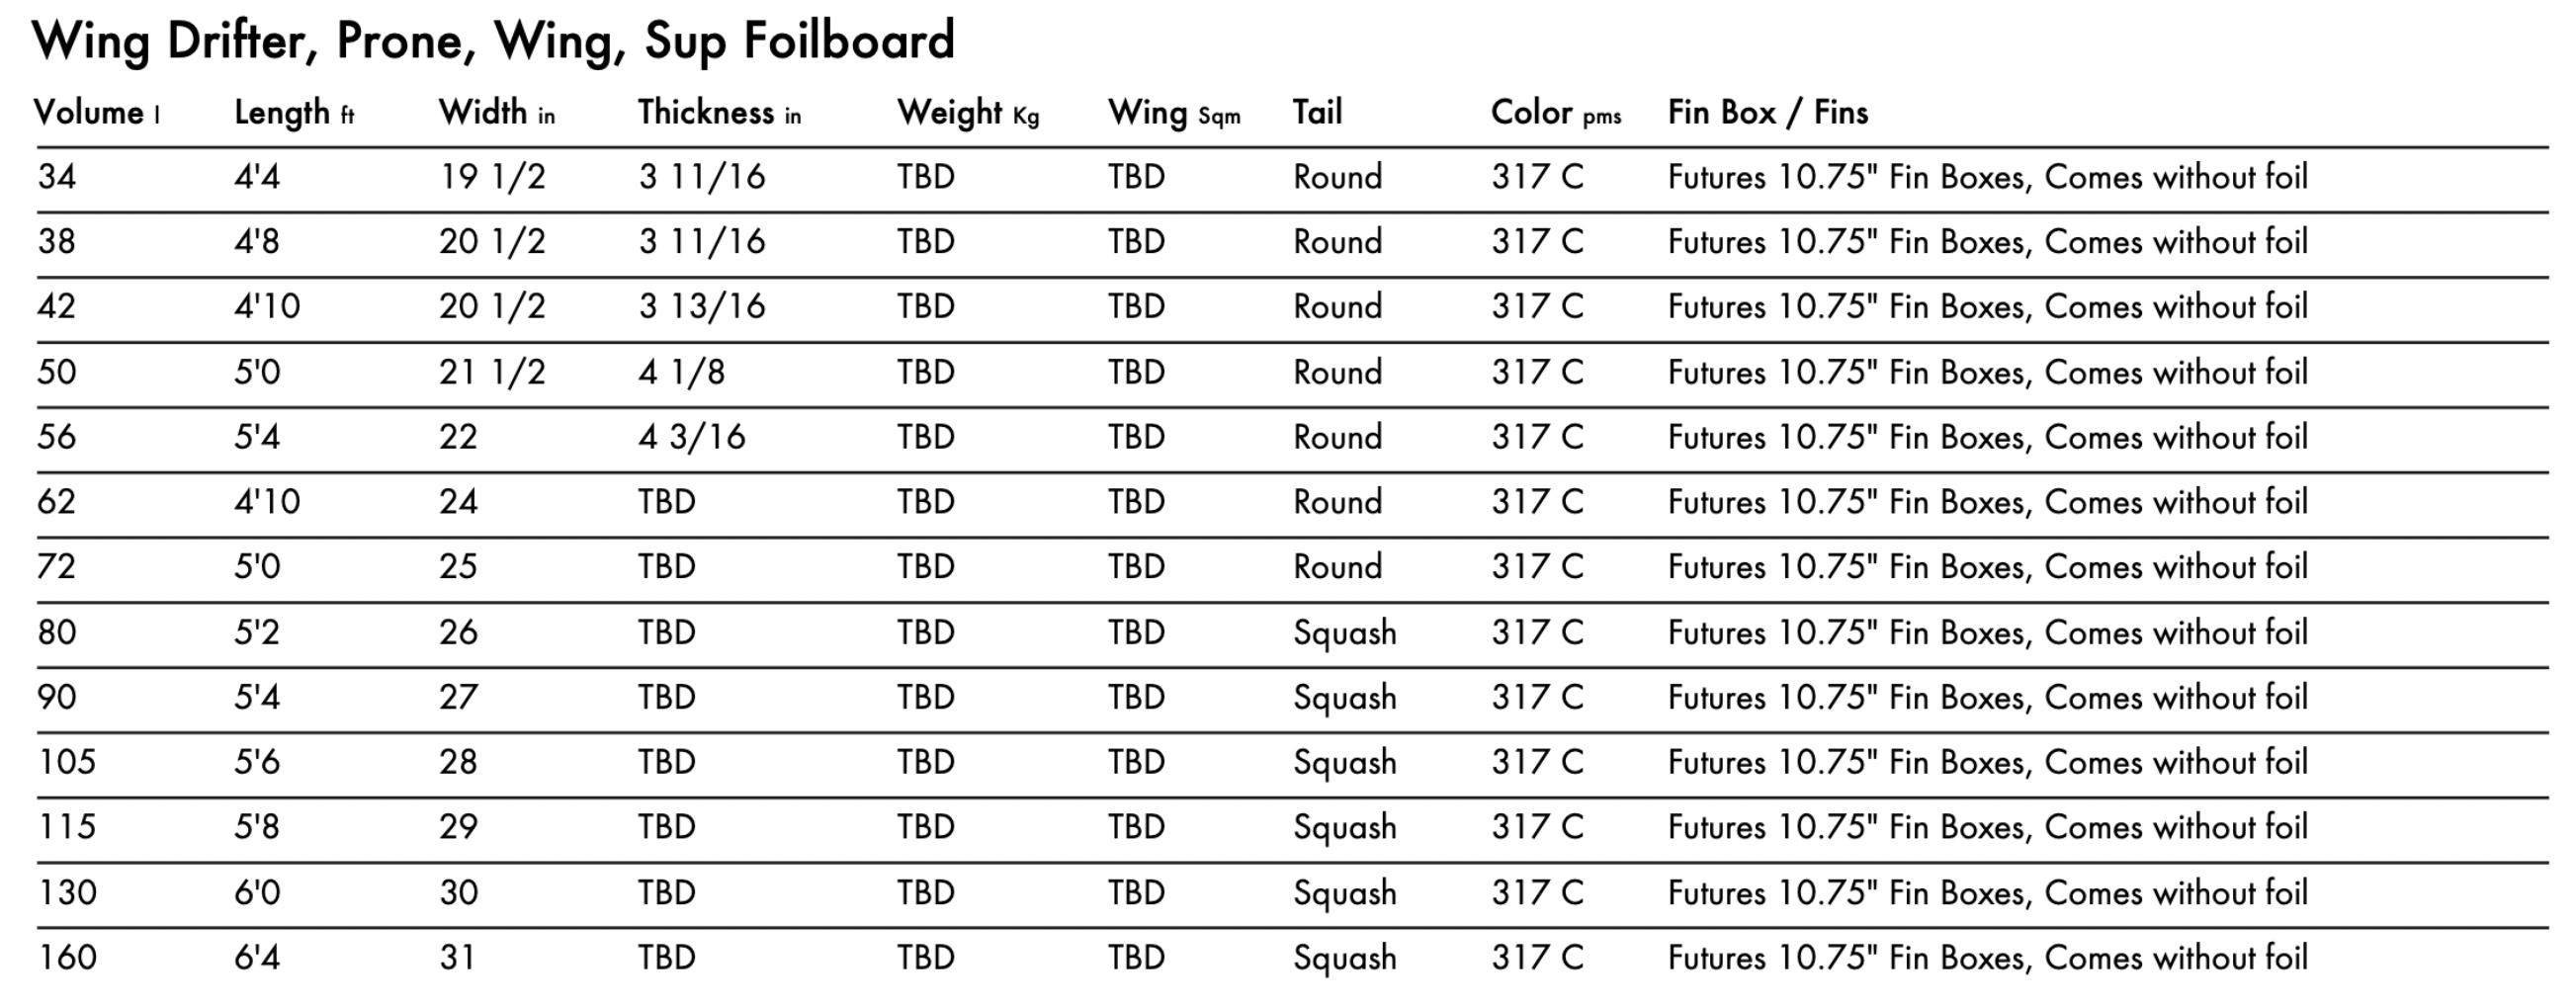 KT Wing Drifter, Wingfoil, Prone, Sup Foilboard 2022